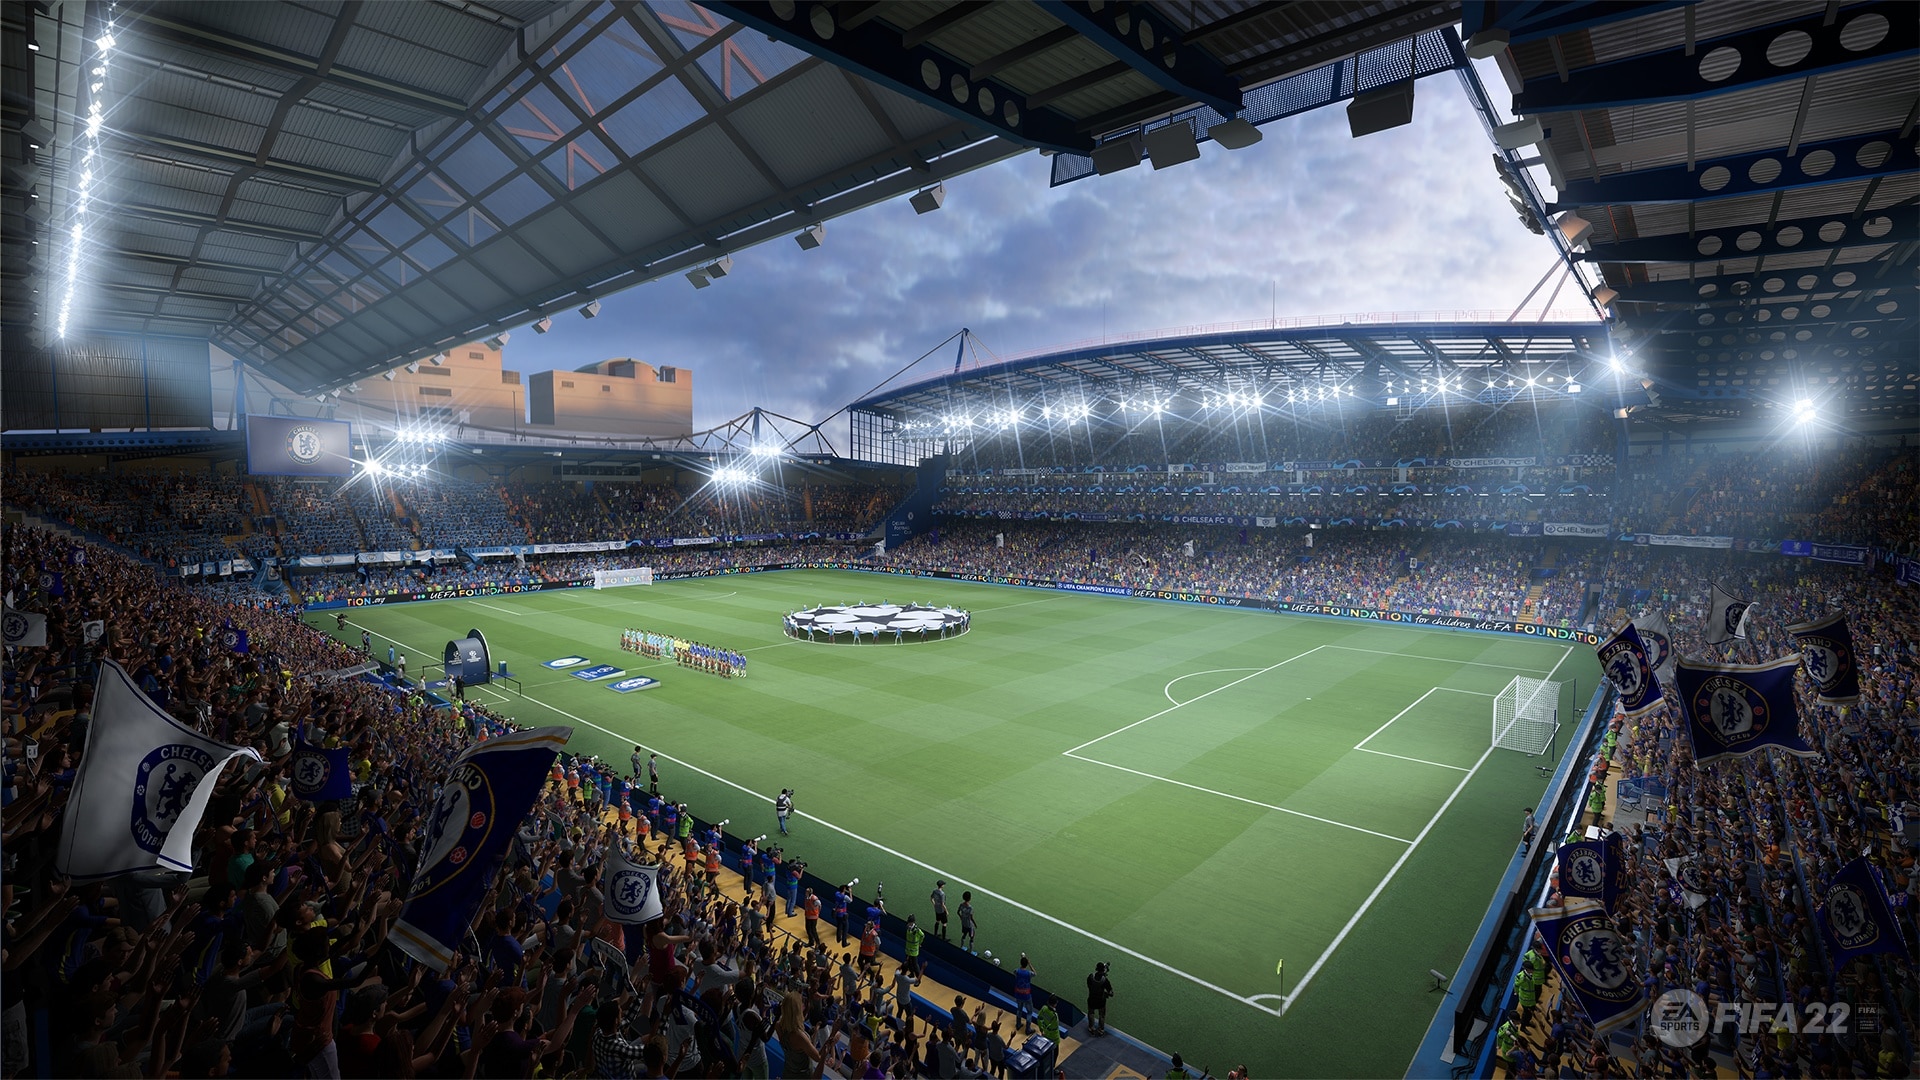 En FIFA 22 hay de nuevo muchos estadios con licencia. Aquí vemos Stamford Bridge. El campo del Chelsea FC